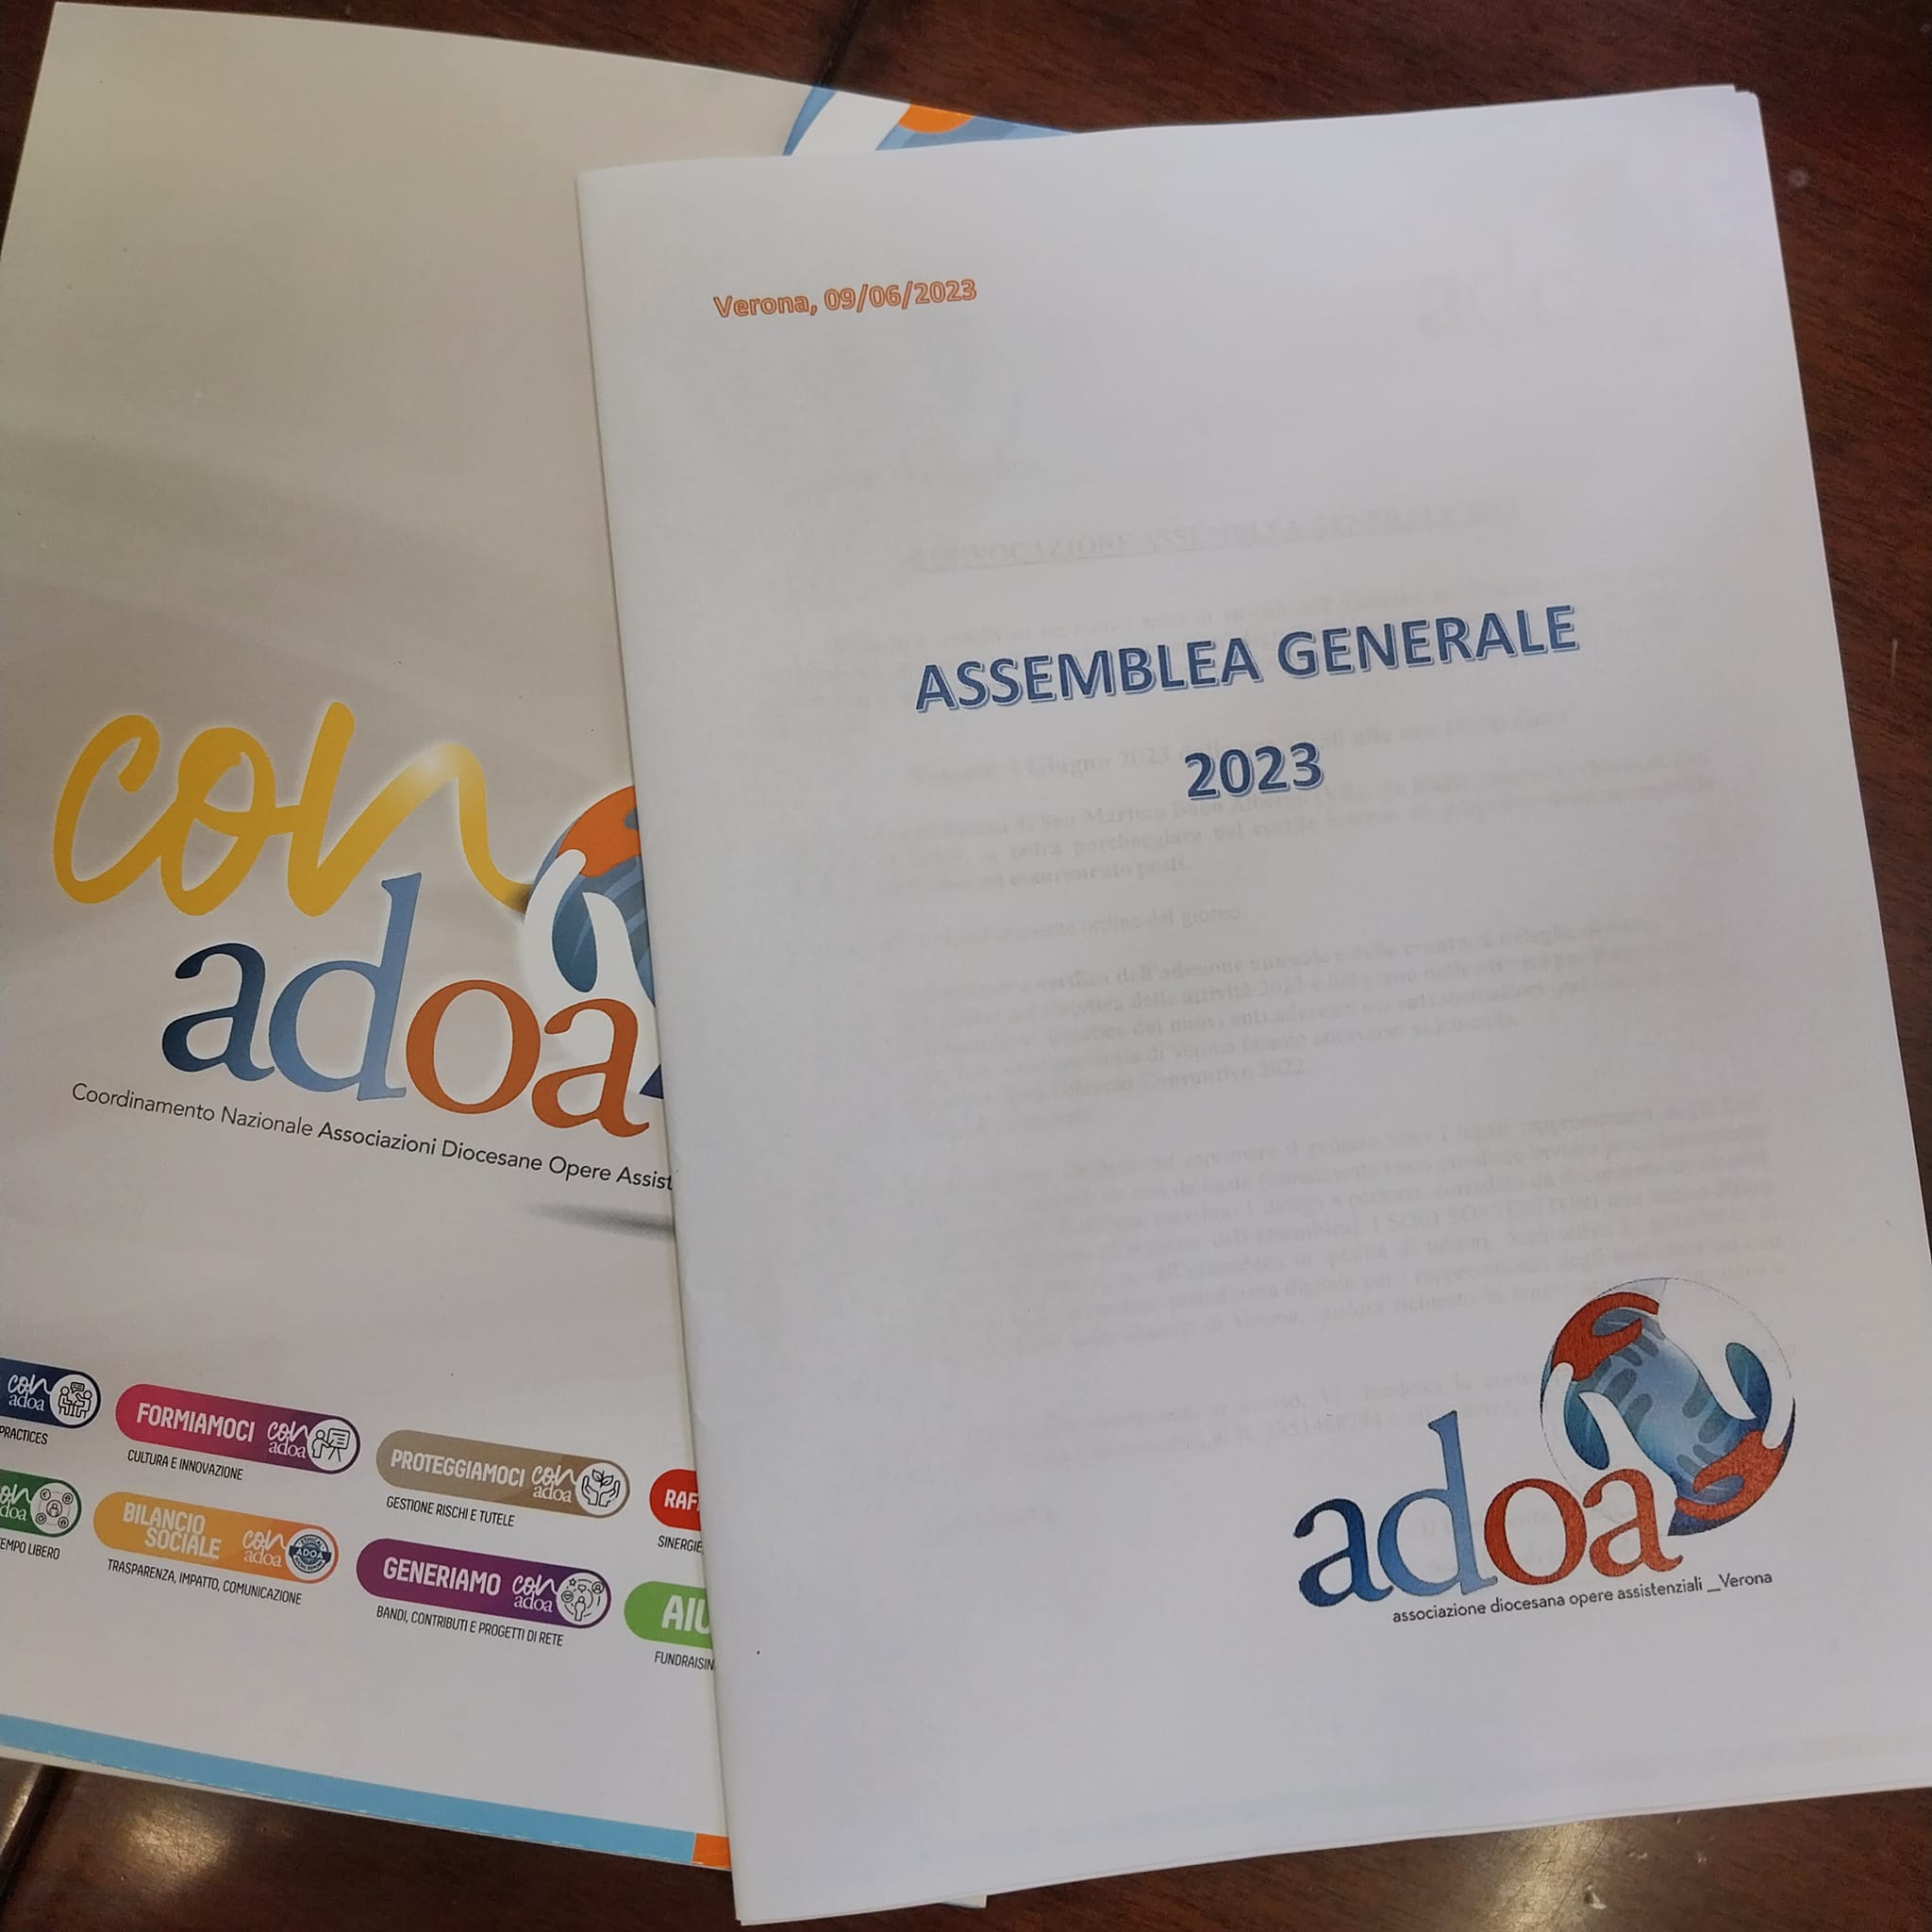 09.06.2023 Assemblea Generale ADOA. 

Confronto sulle attività sociali e interventi da Bologna e da Parma ad arricchire un pomeriggio molto …